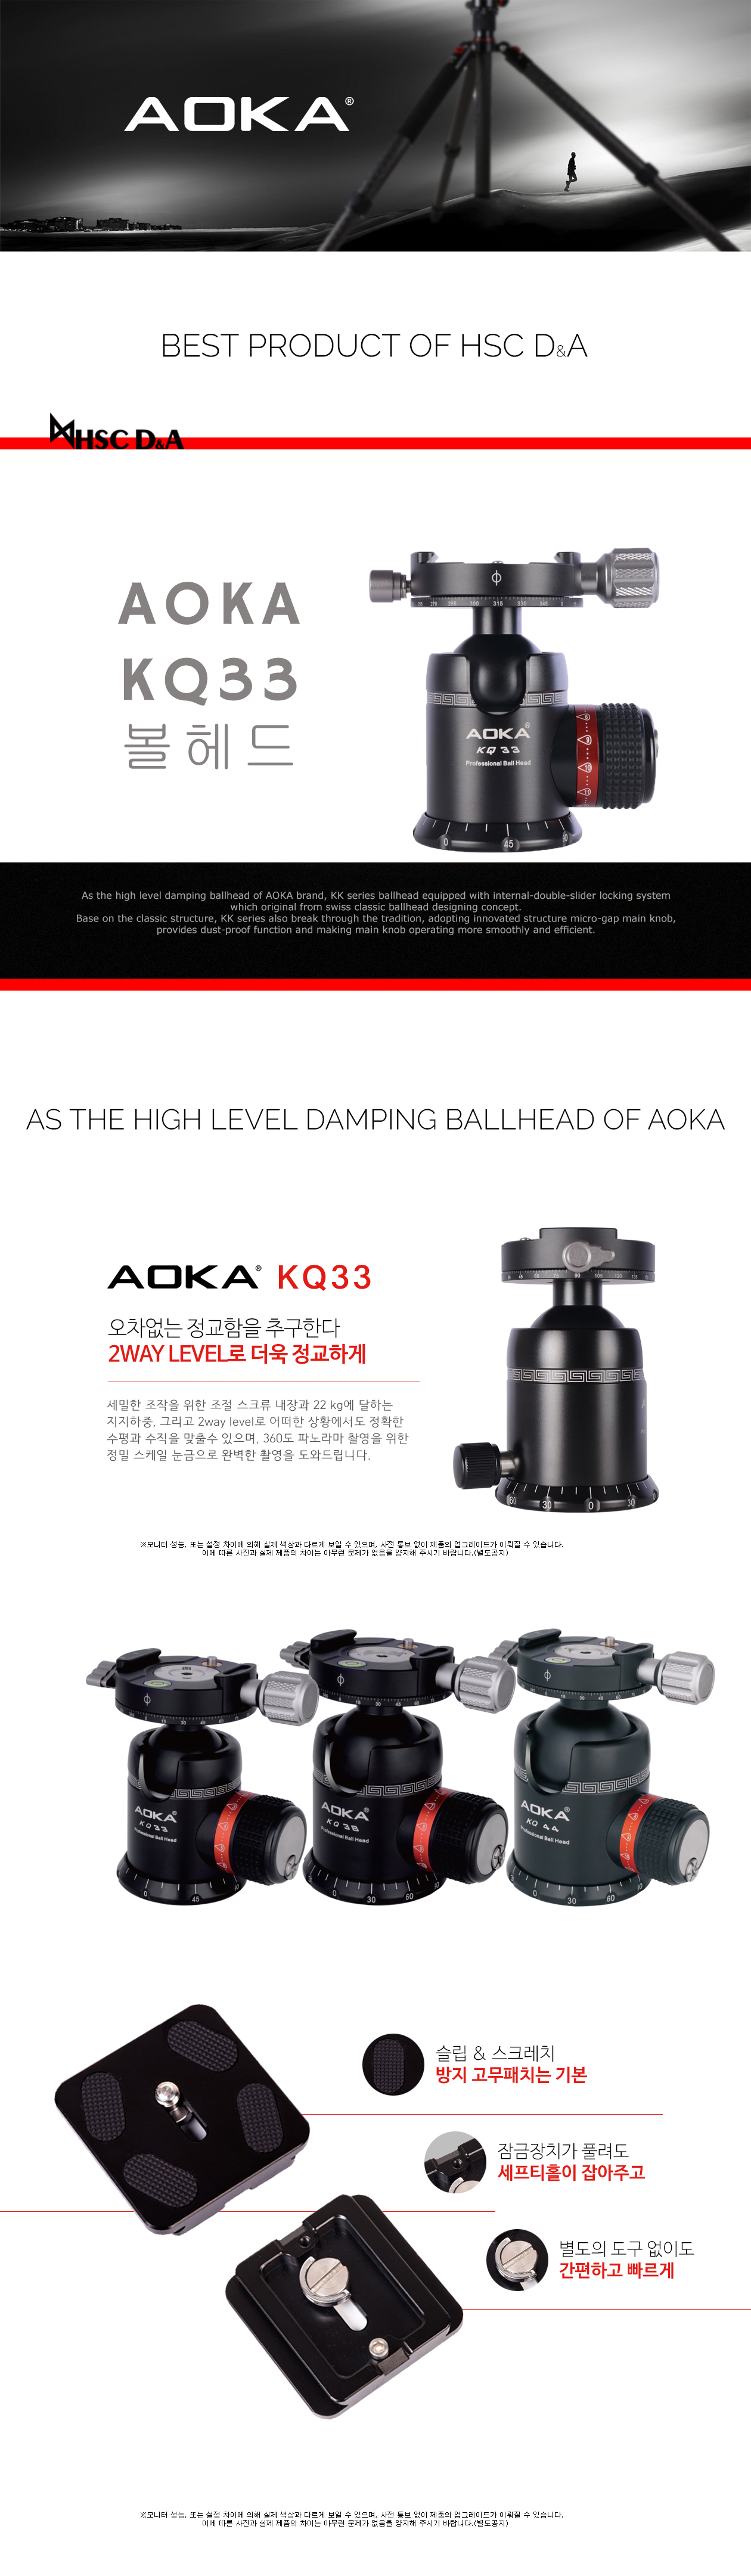 AOKA KQ33 Ball Head